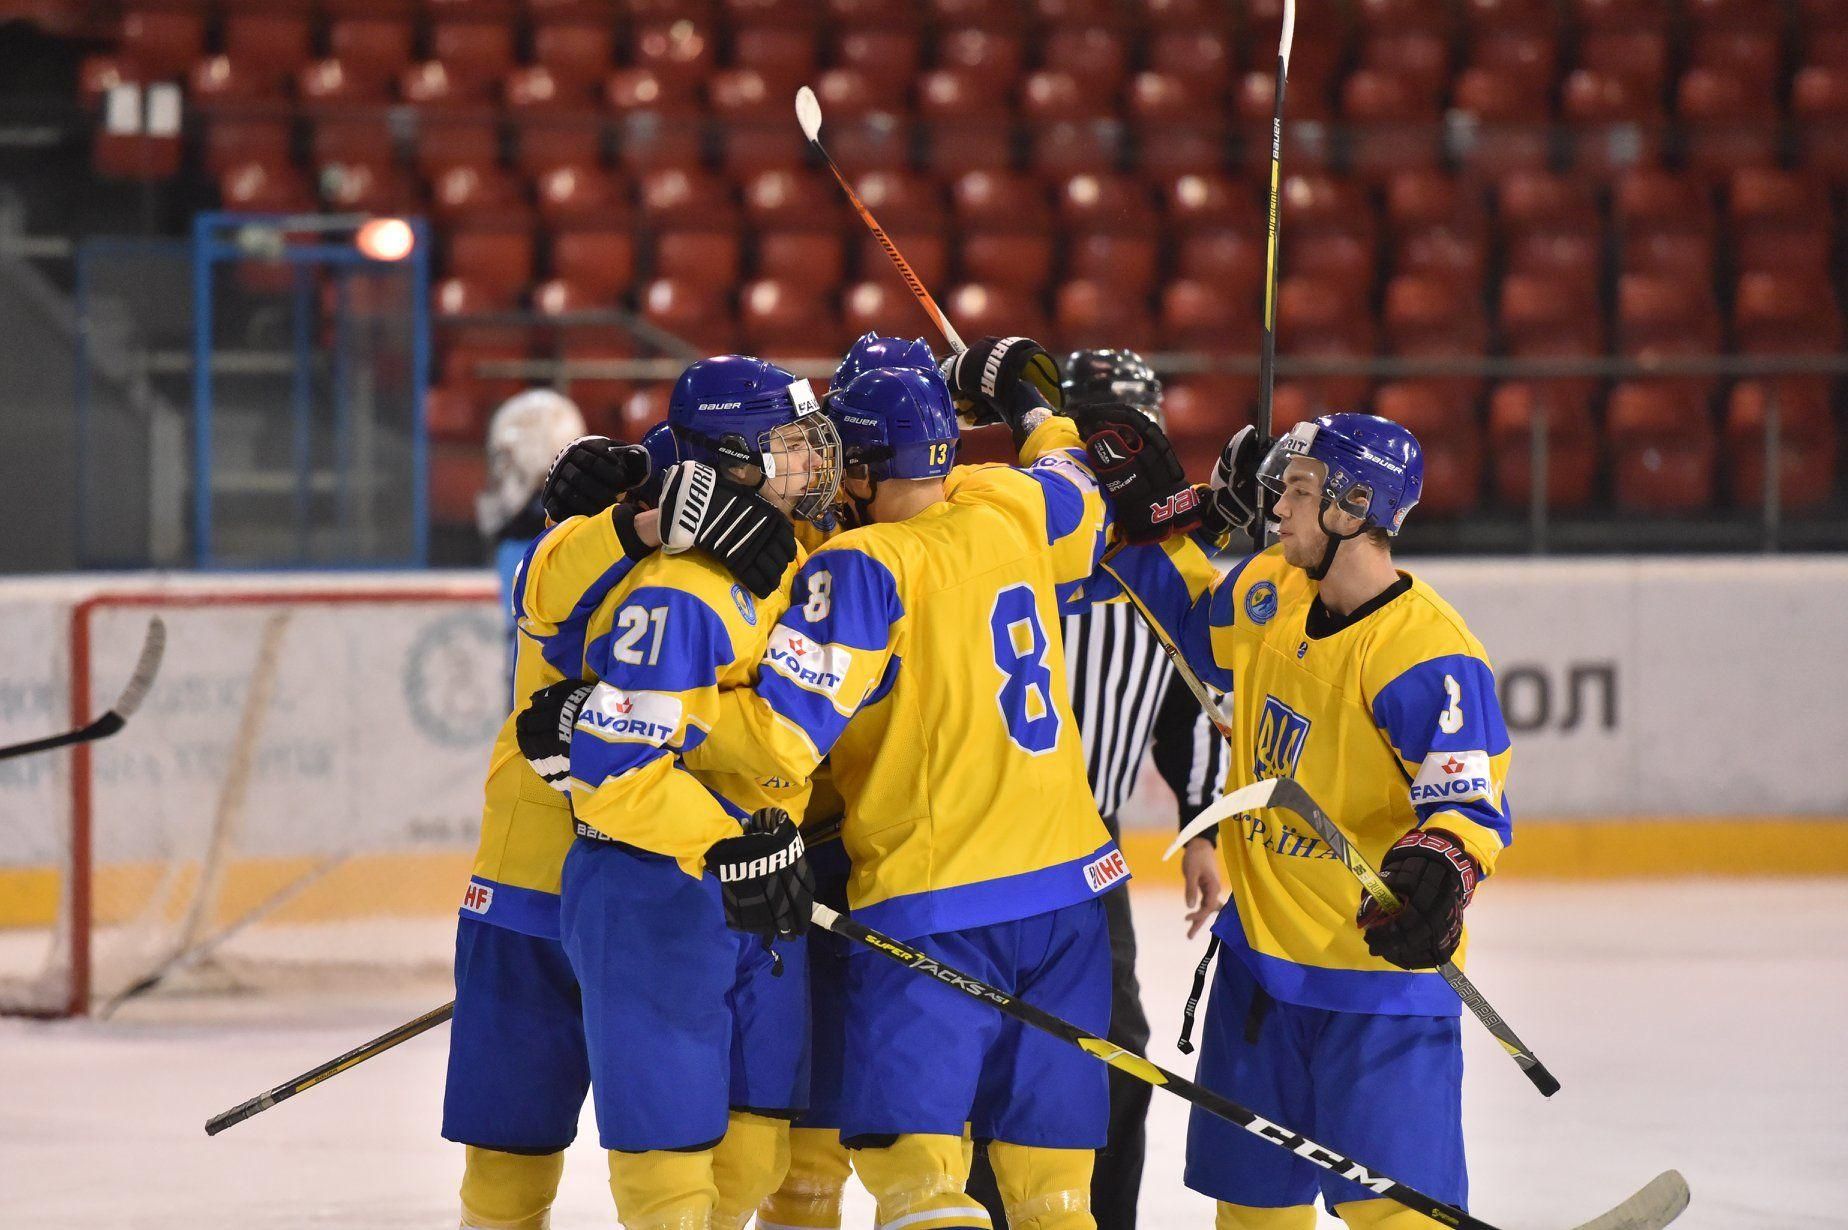 Збірна України у неймовірному матчі обіграла Францію на чемпіонаті світу з хокею - Спорт 24